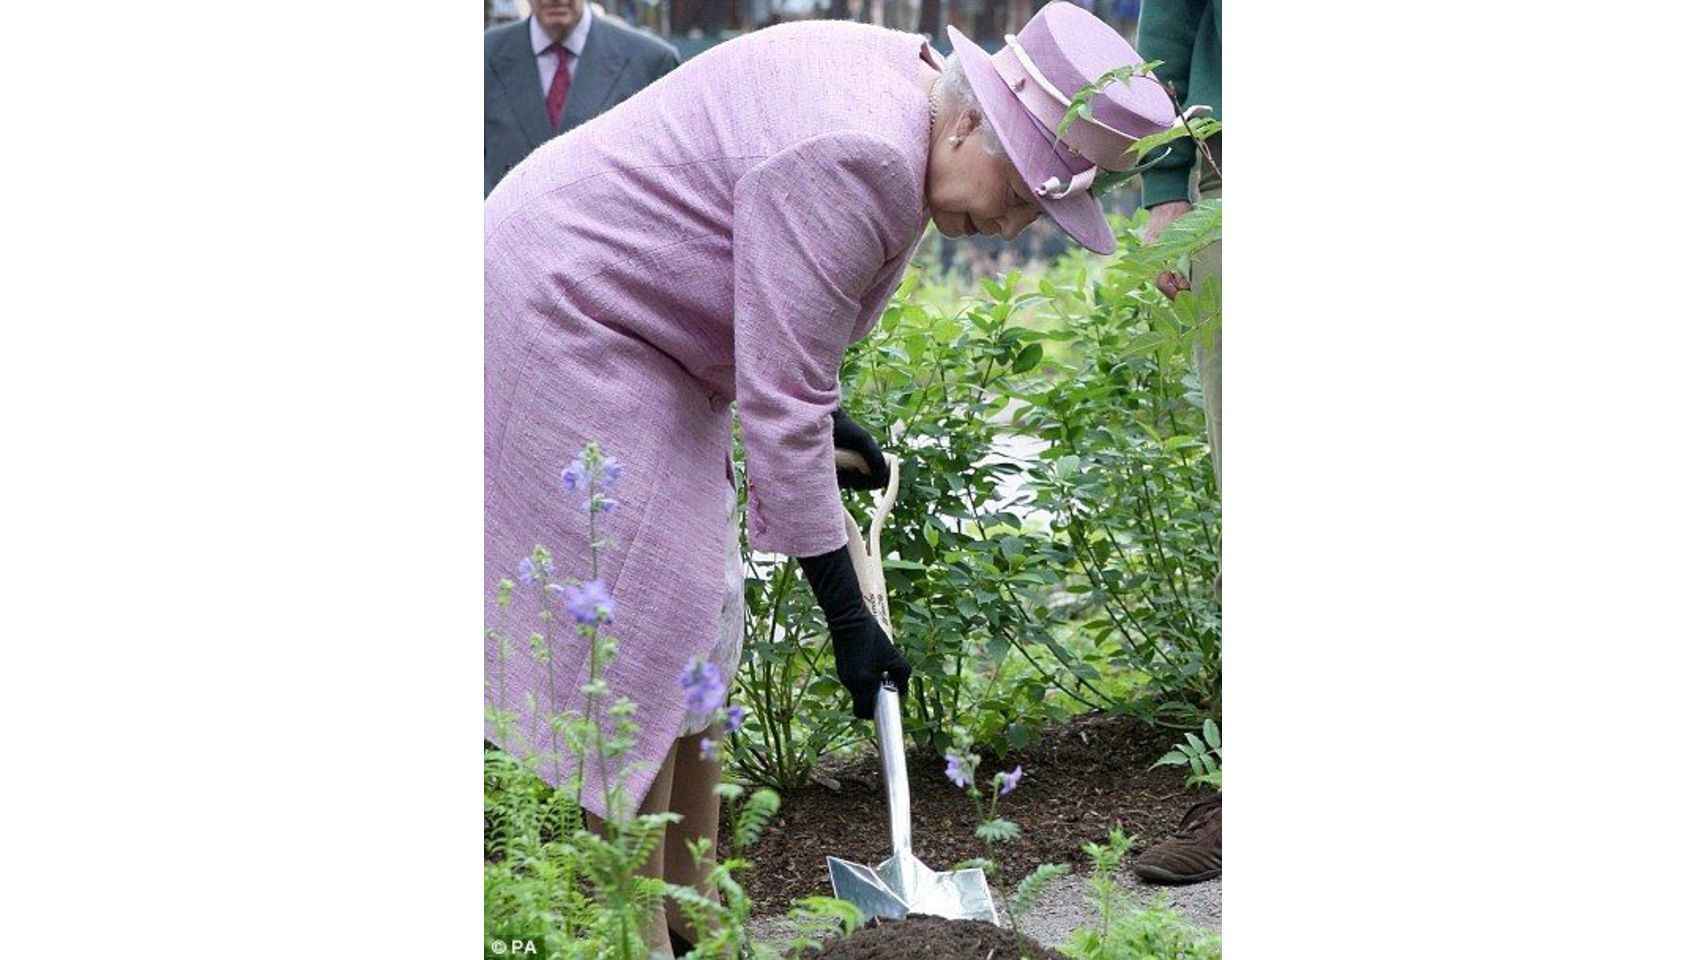 La reina Isabell trabajando la tierra del jardín.